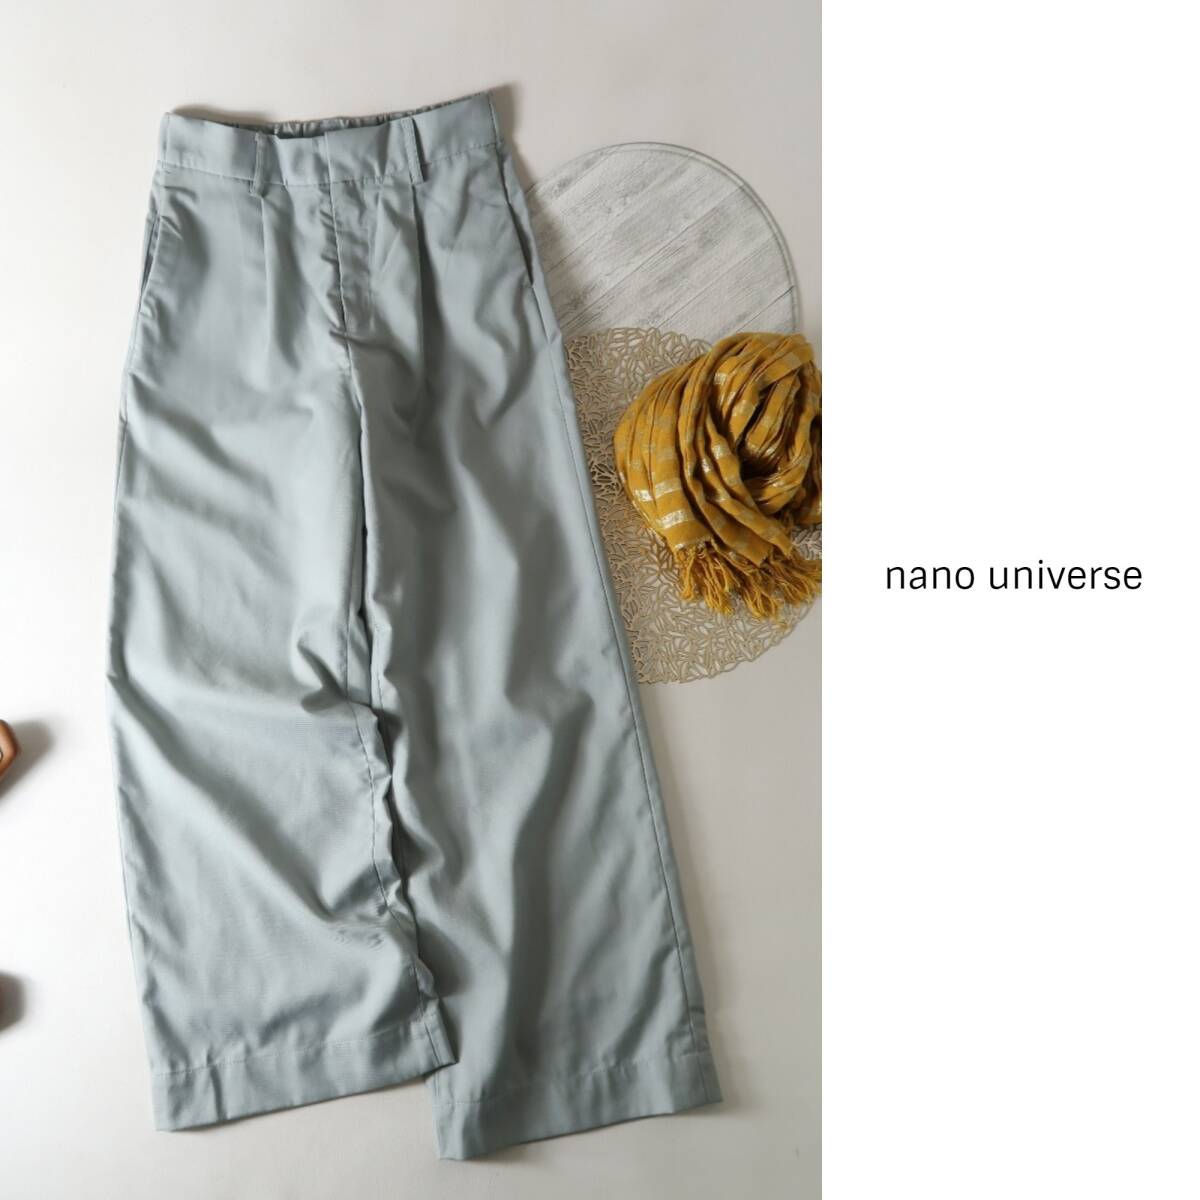  new goods * Nano Universe nano universe*... inter k wide pants free size *C-K 1343